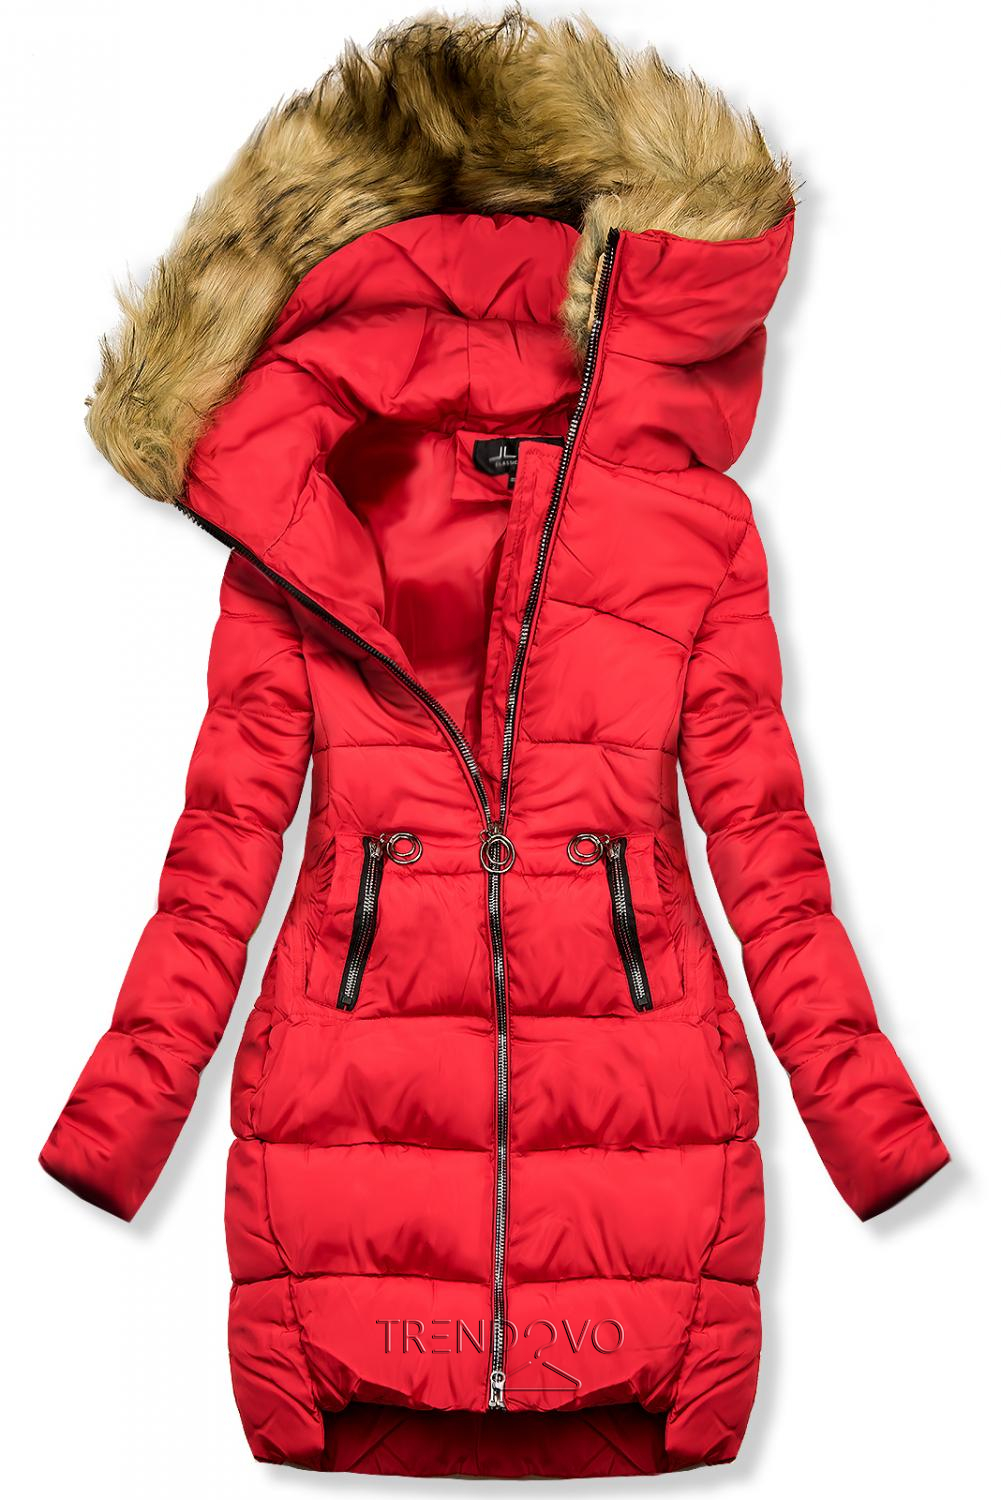 Červená zimní bunda s kapucí